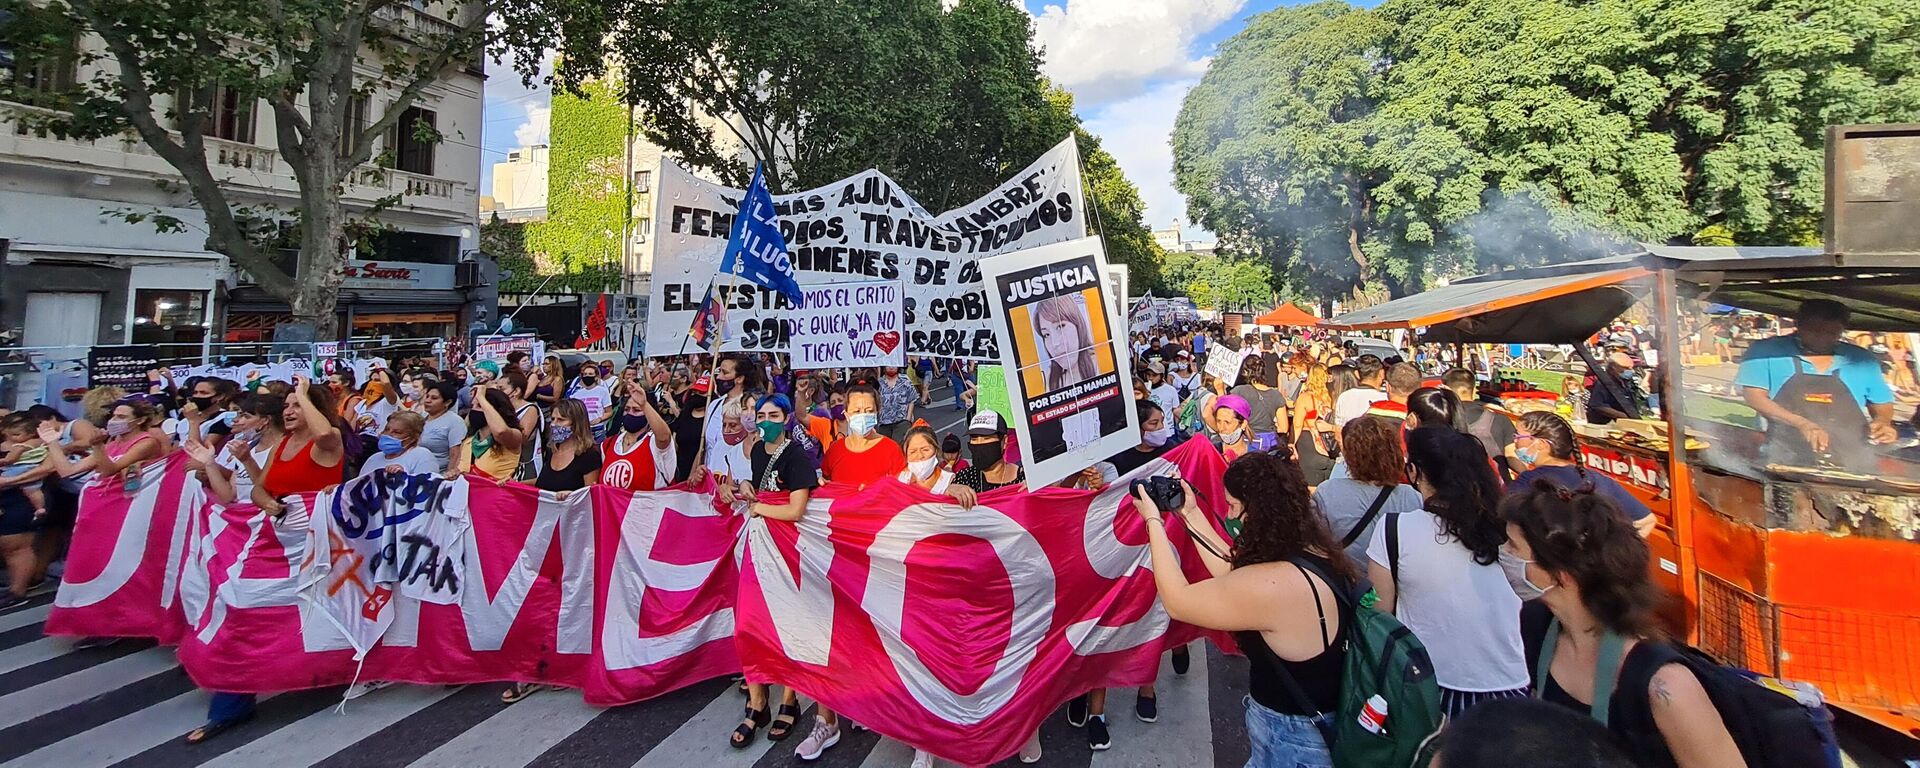 El Día Internacional de la Mujer fue otra jornada de lucha del feminismo fuera del Congreso argentino - Sputnik Mundo, 1920, 08.03.2021